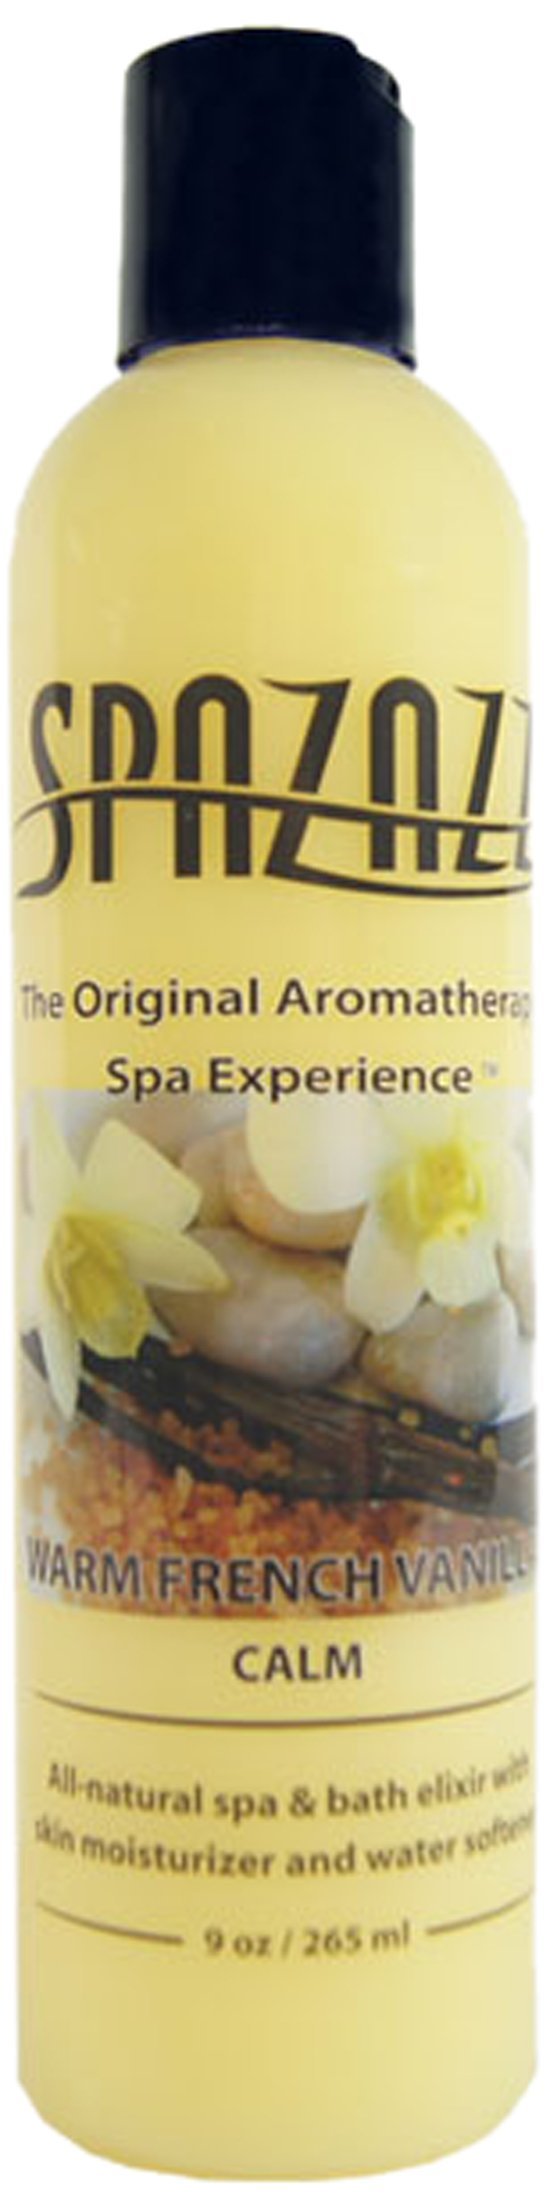 Spazazz Original Elixir Bottle Spa and Bath Aromatherapy, 9-Ounce, Warm French Vanilla Calm 1 - BeesActive Australia